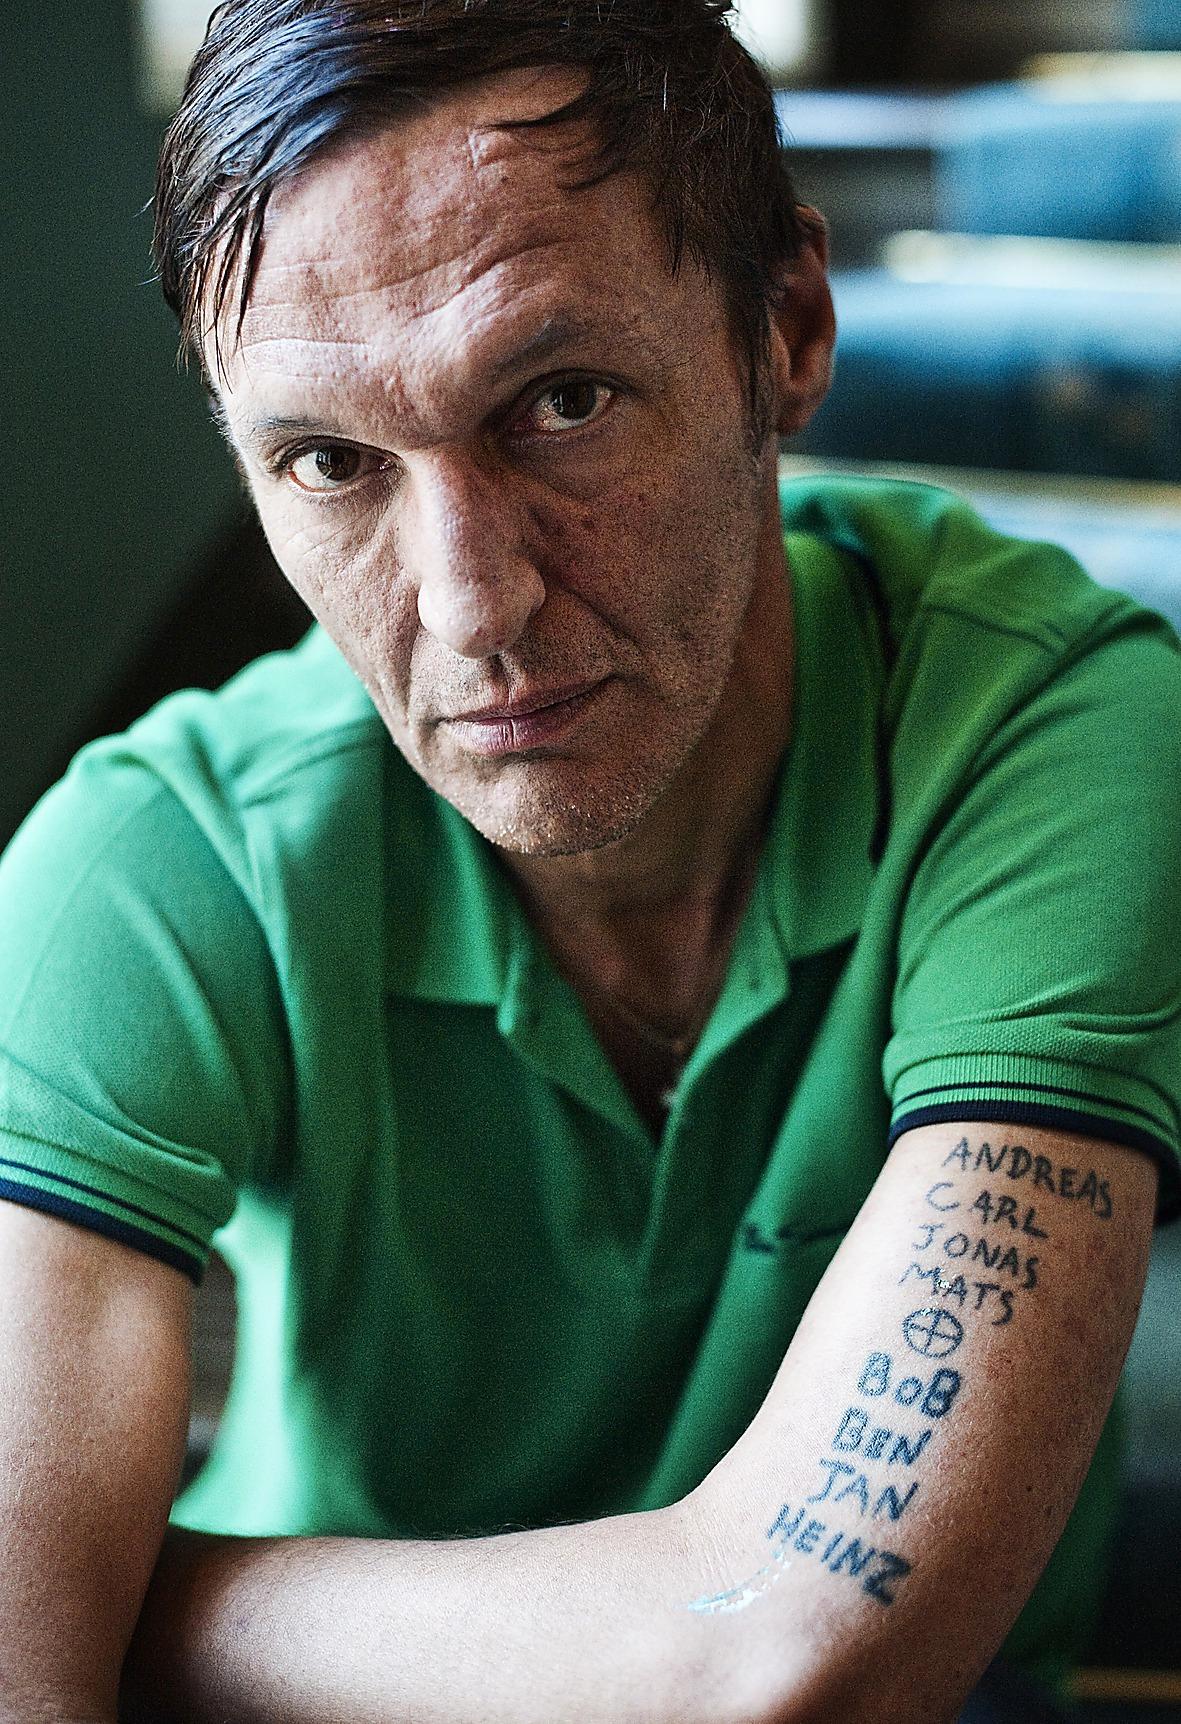 Förra hösten var Olle Ljungström aktuell med boken ”Jag är både listig och stark” där han intervjuas om karriären och missbruket.